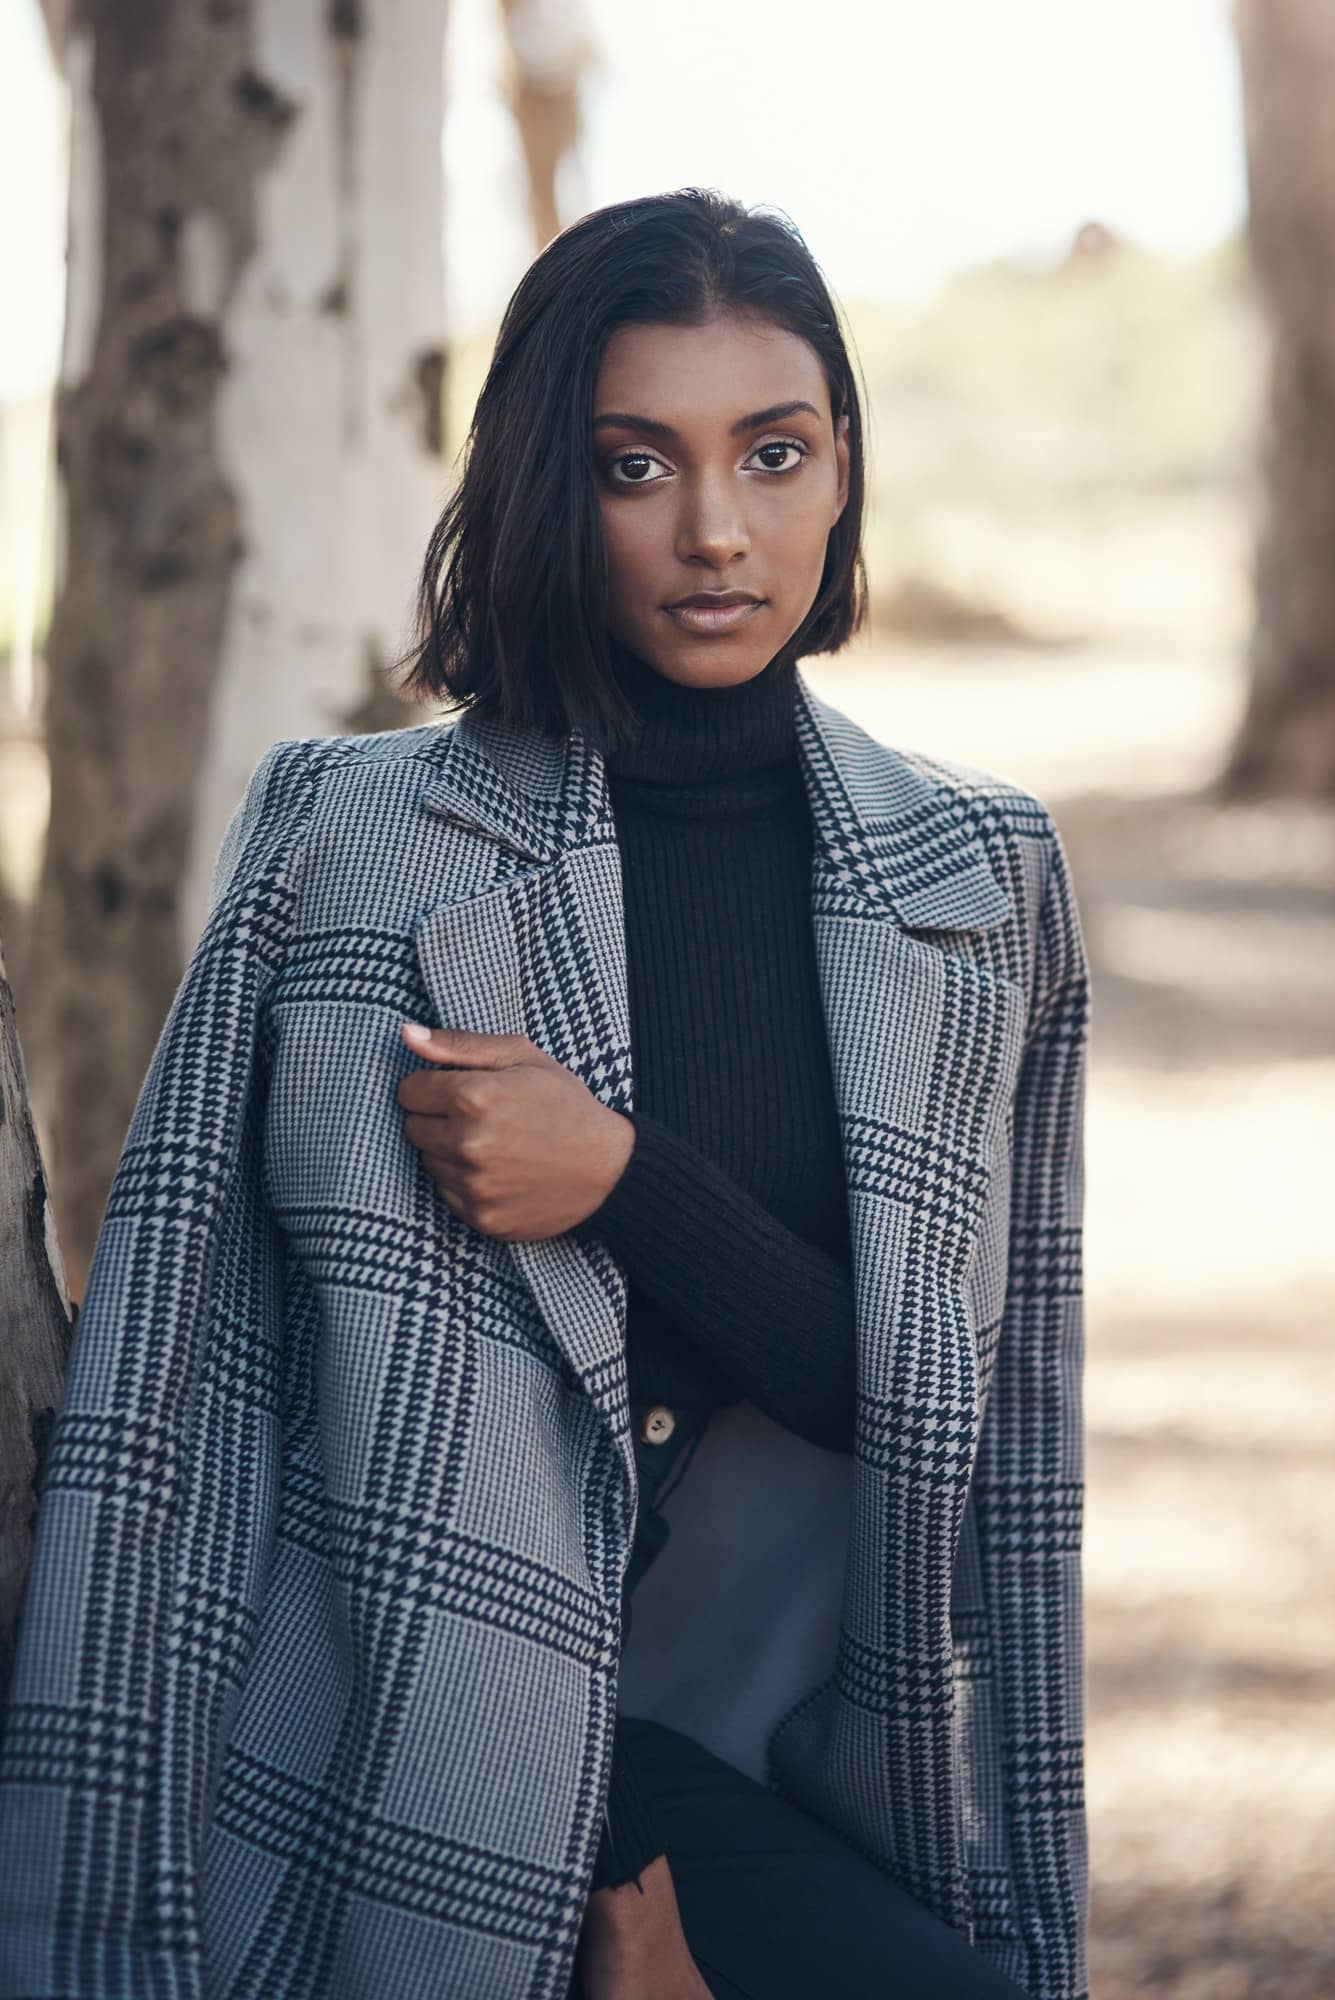 Manteau pour femme : choisir un modèle adapté à votre style